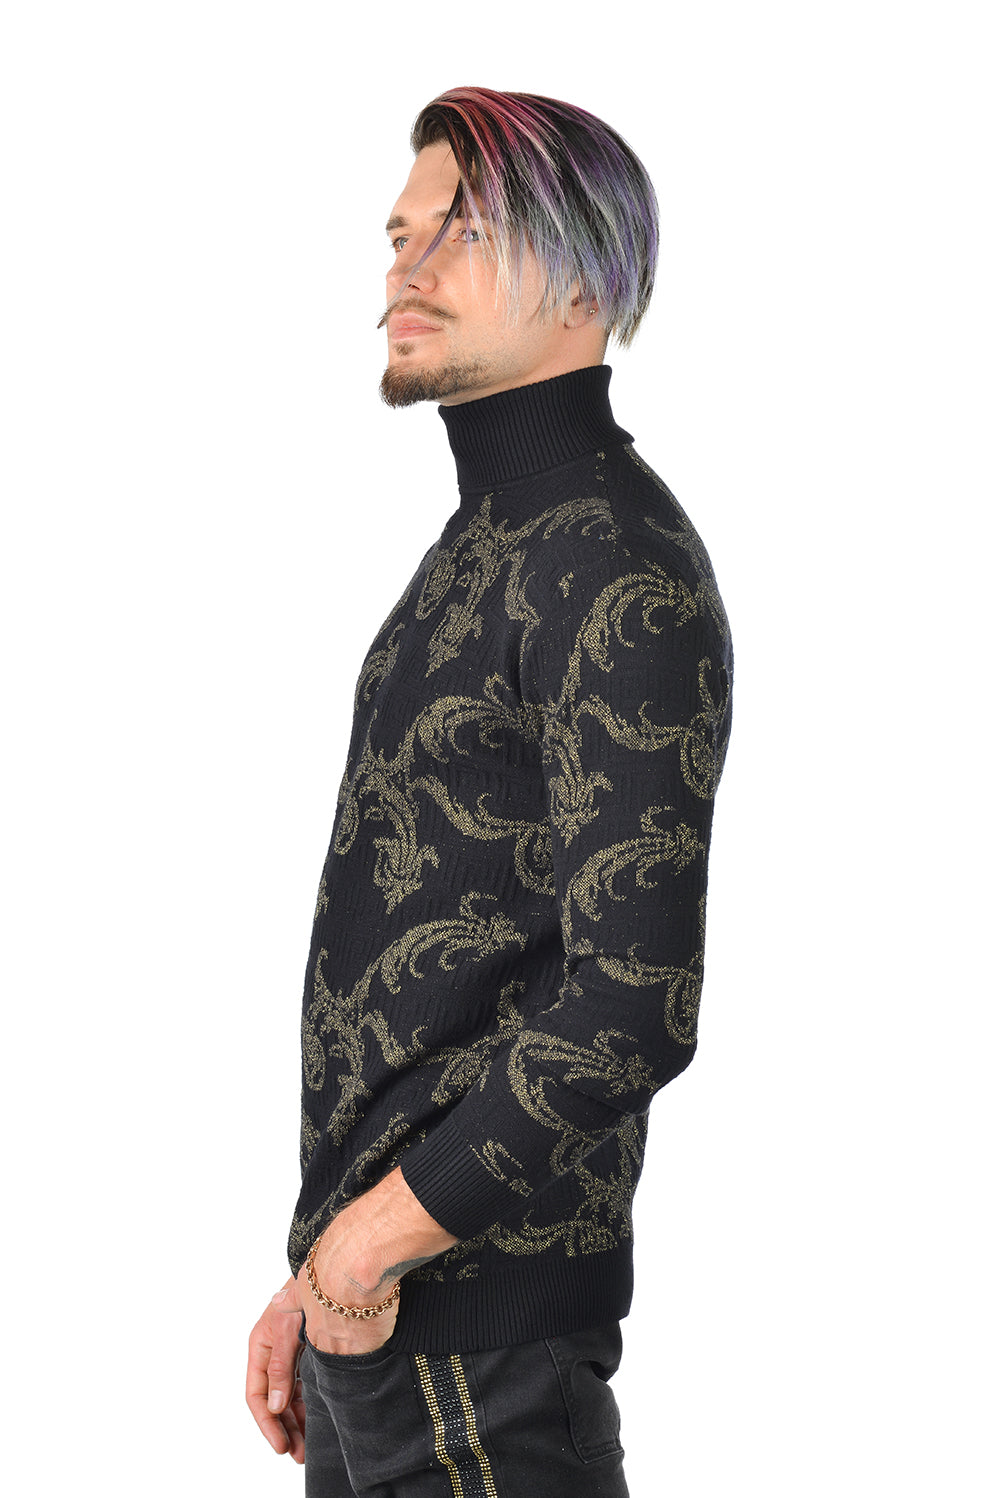 Barabas Men's Floral Print Design Long Sleeve Turtleneck Sweater 2LS2102 Black Gold